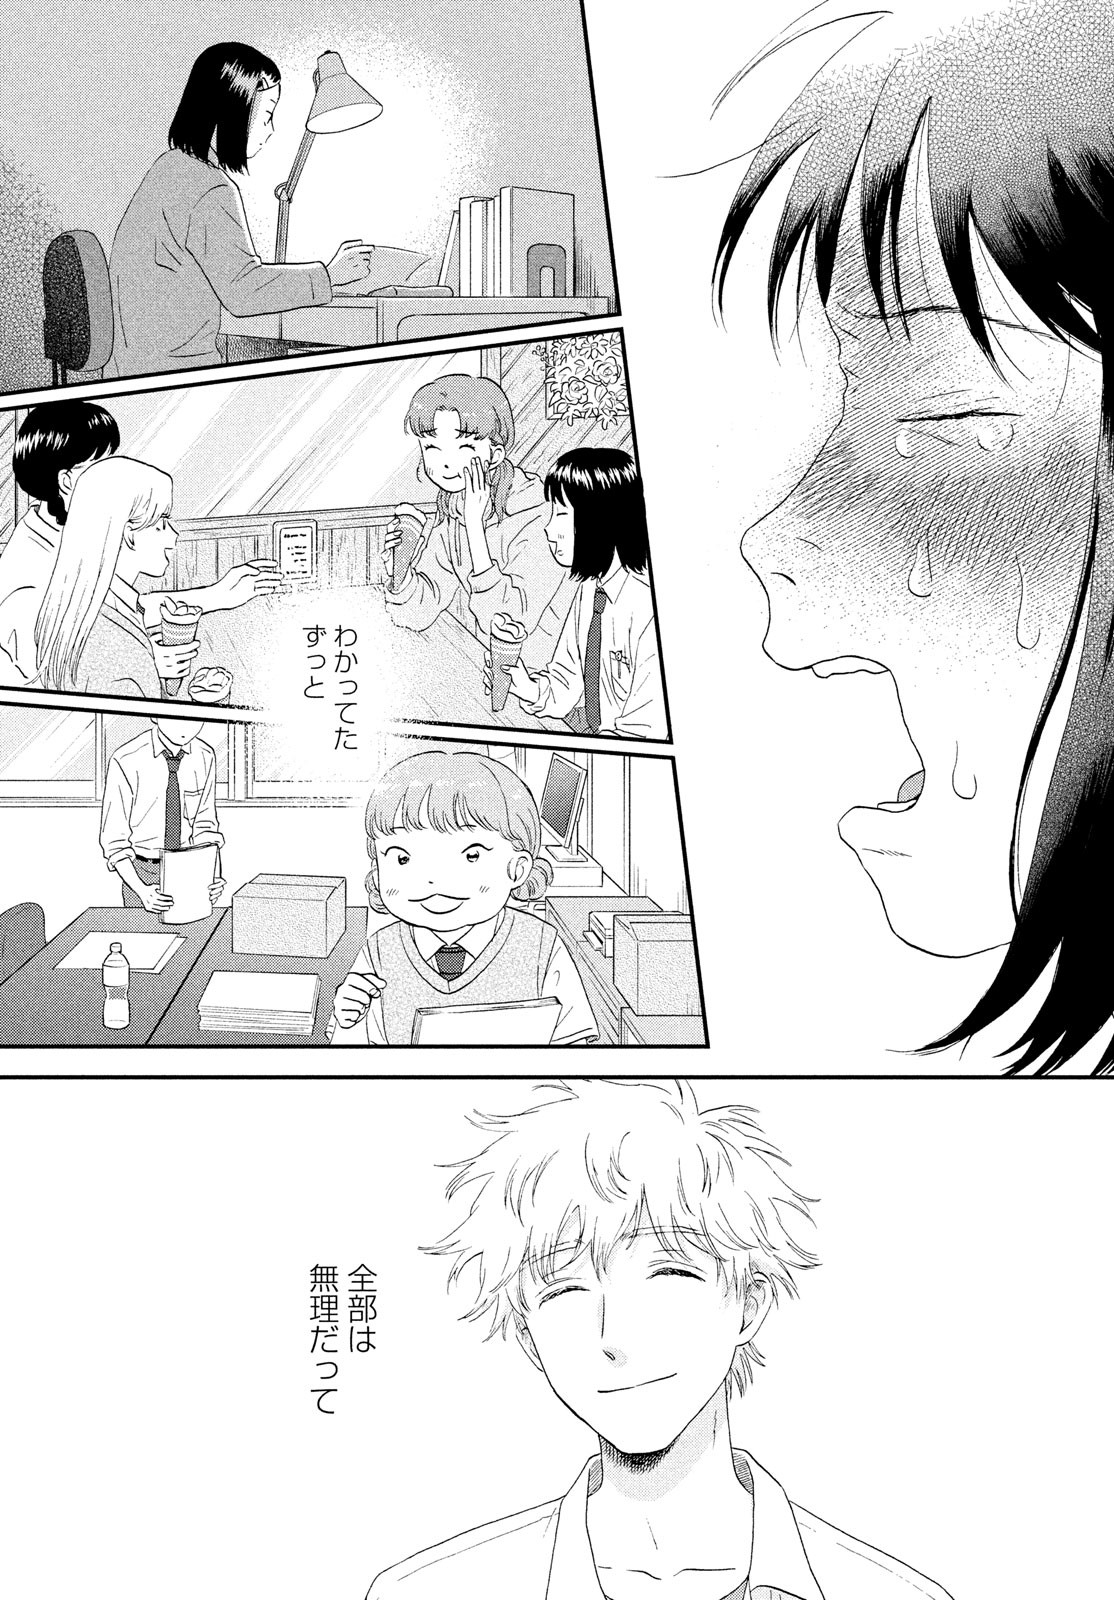 Daru on X: #Manga Skip to Loafer #Anime  / X